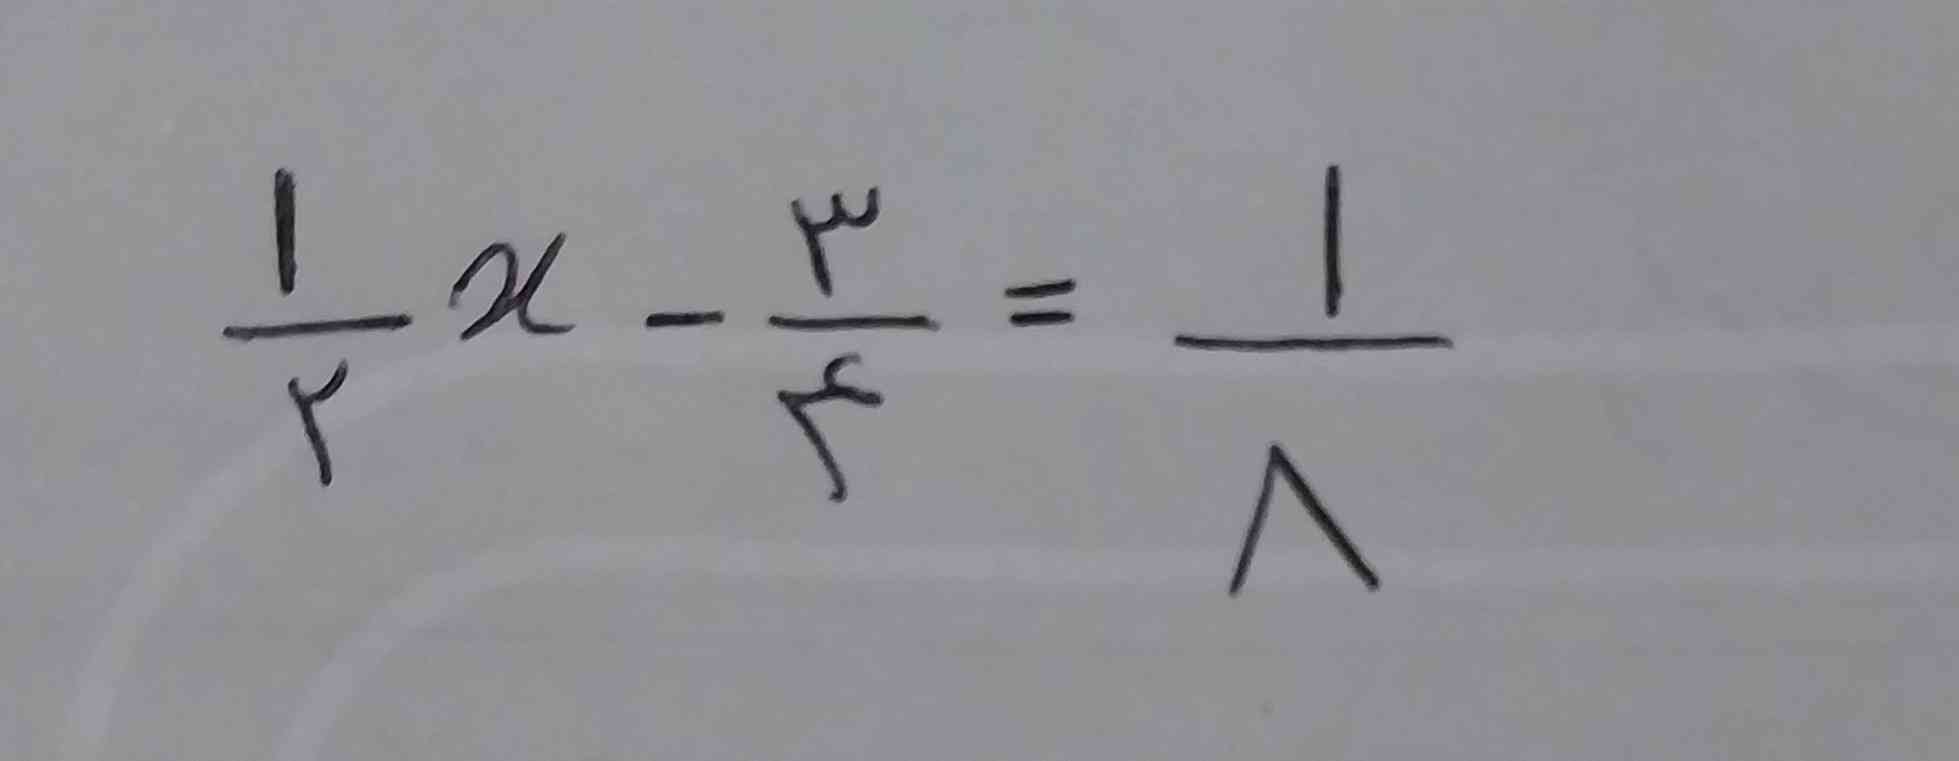 جواب این معادله چی میشه دوستان🥺؟ 
تاج می دم لطفاً بگین؟ 